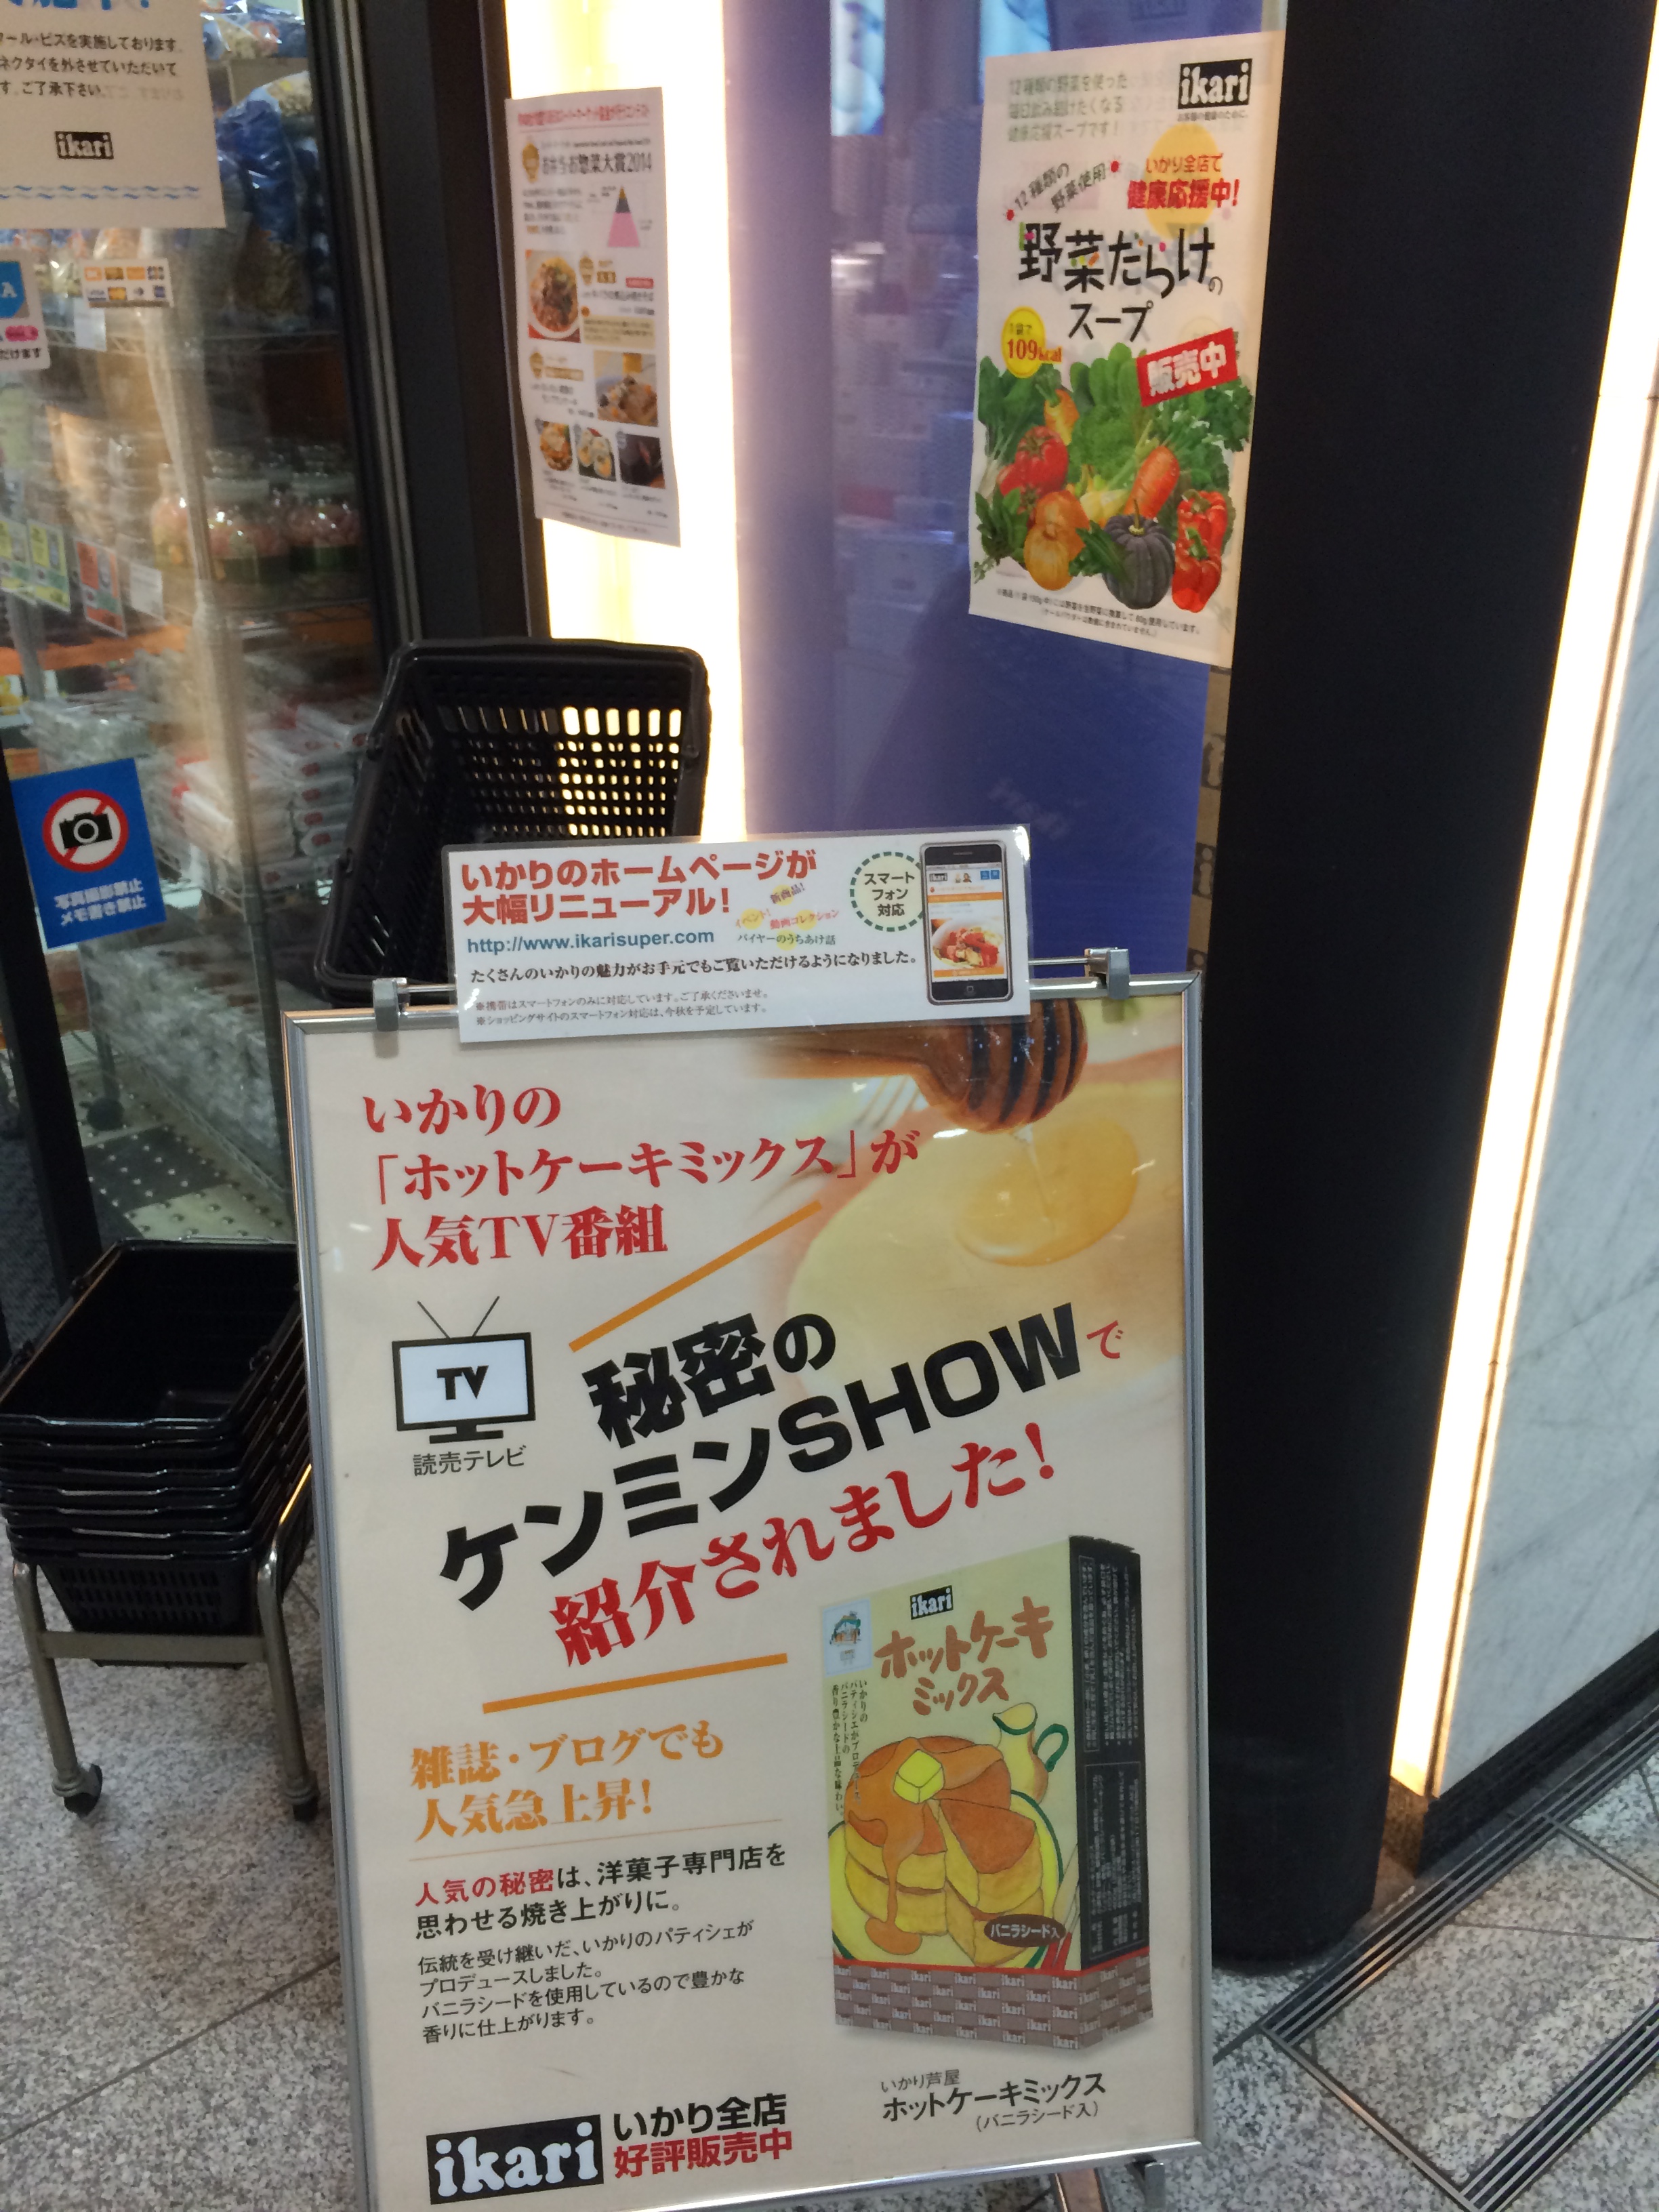 大阪 Ikari 店頭のオススメポスターは いかり 野菜だらけのスープ いかり芦屋ホットケーキミックス マーケティングラボブログ